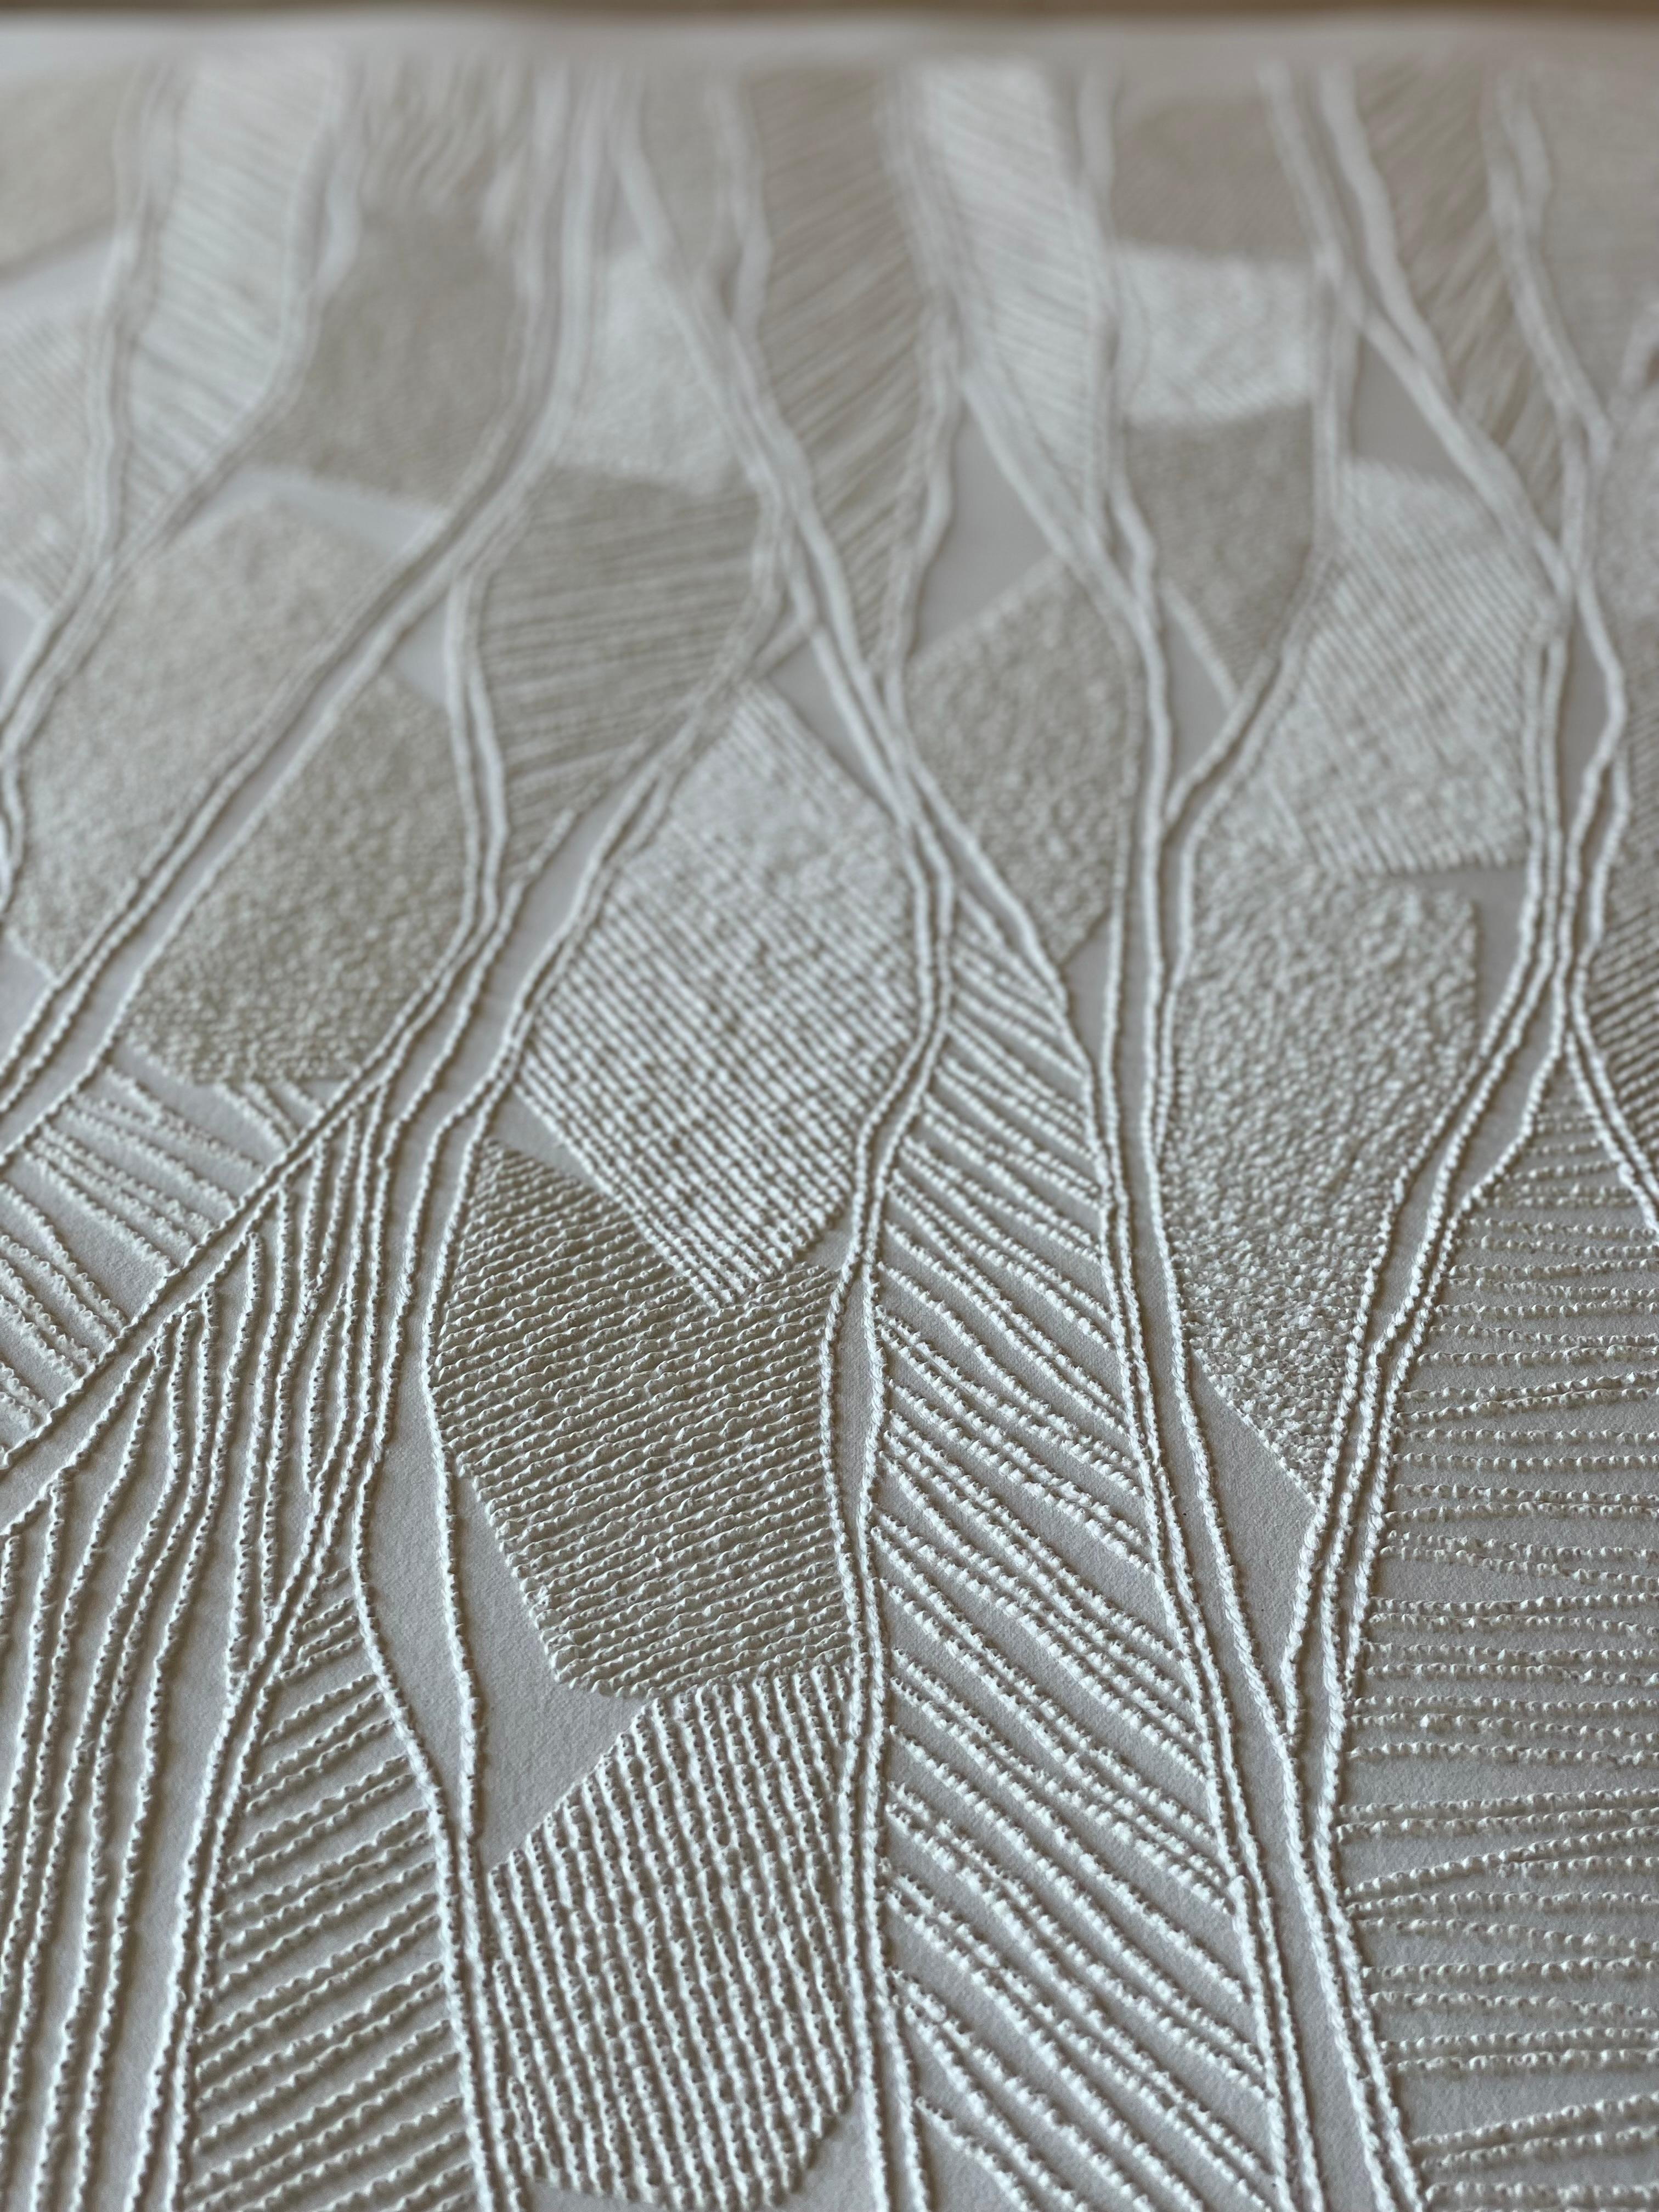 #2 – aufwändige beige 3D-Abstrakte Luftbildzeichnung mit gegezogenen Papierfasern (Beige), Abstract Sculpture, von Antonin Anzil